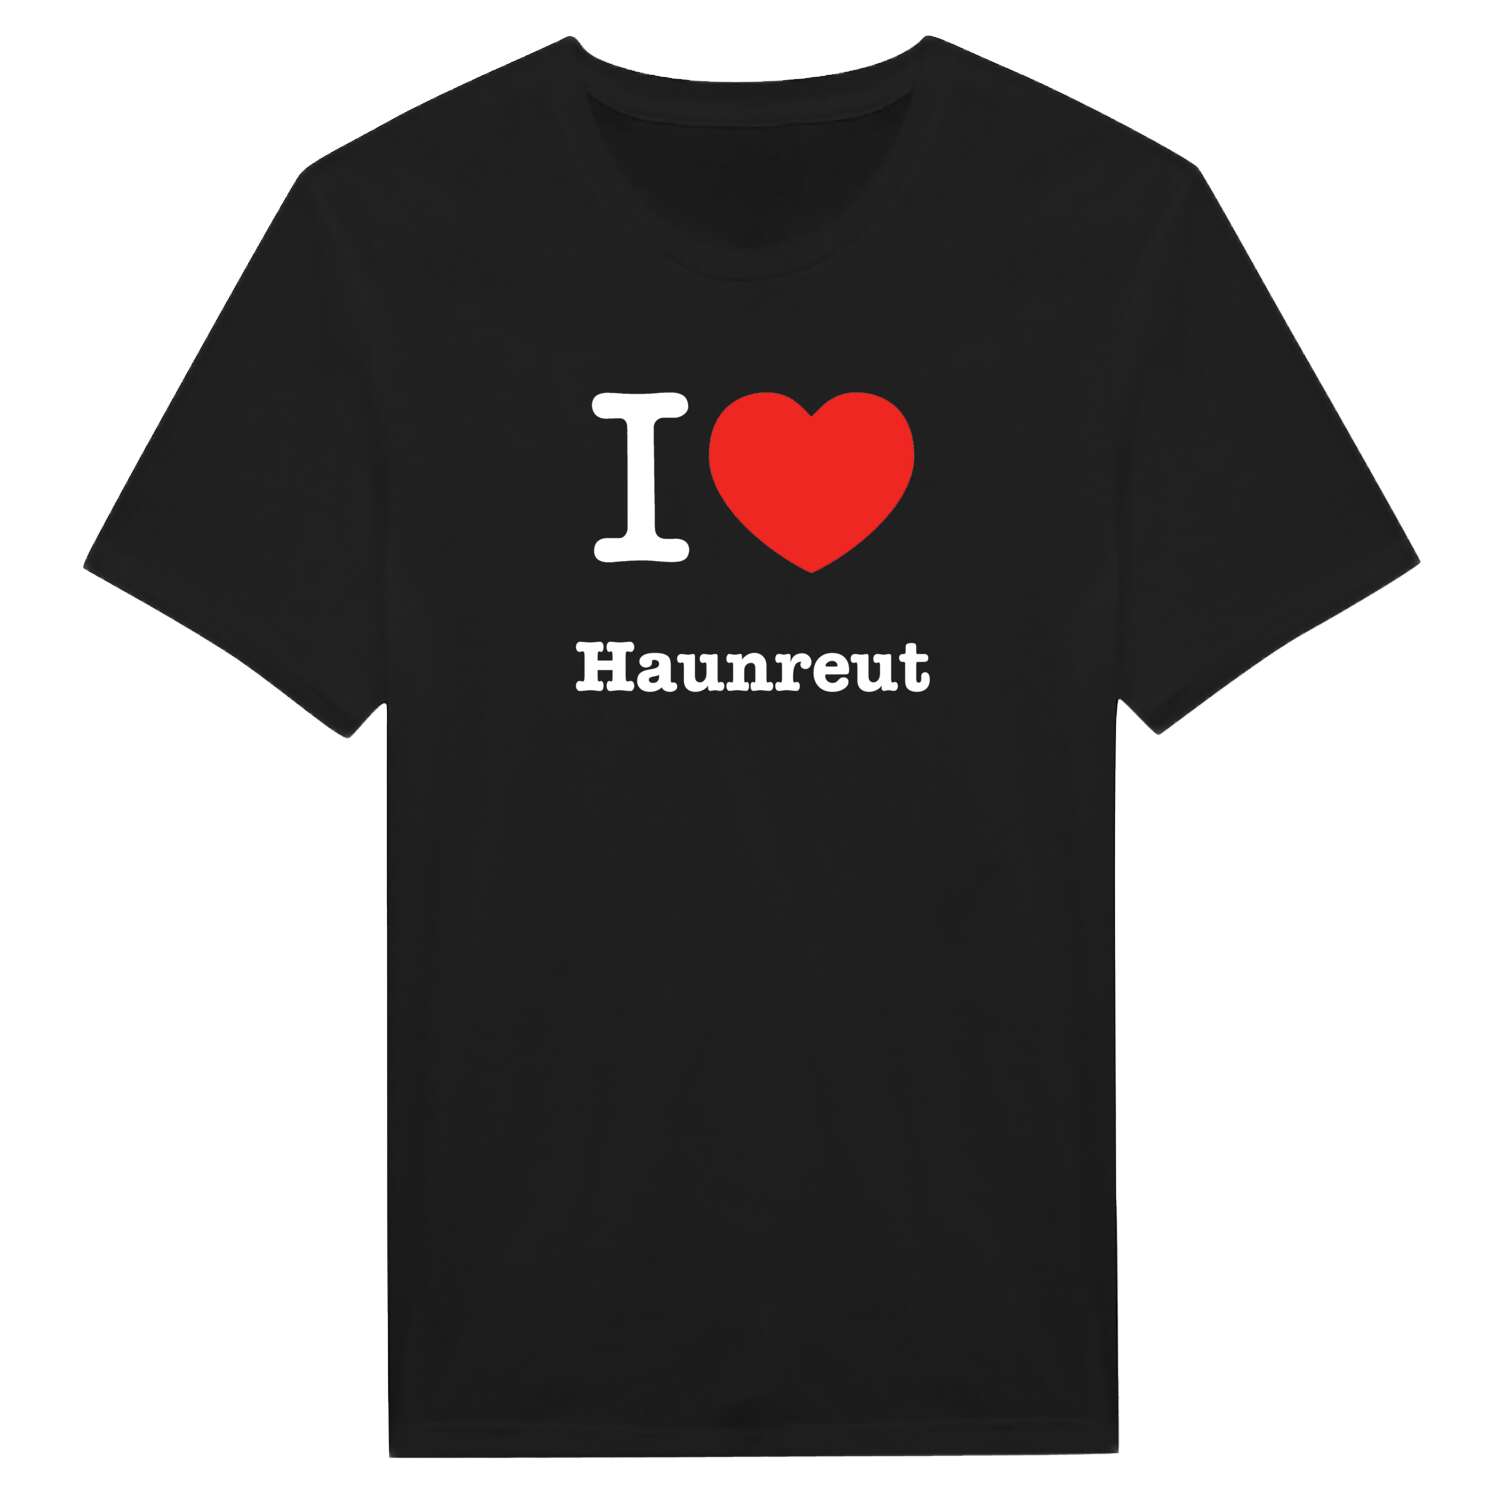 Haunreut T-Shirt »I love«